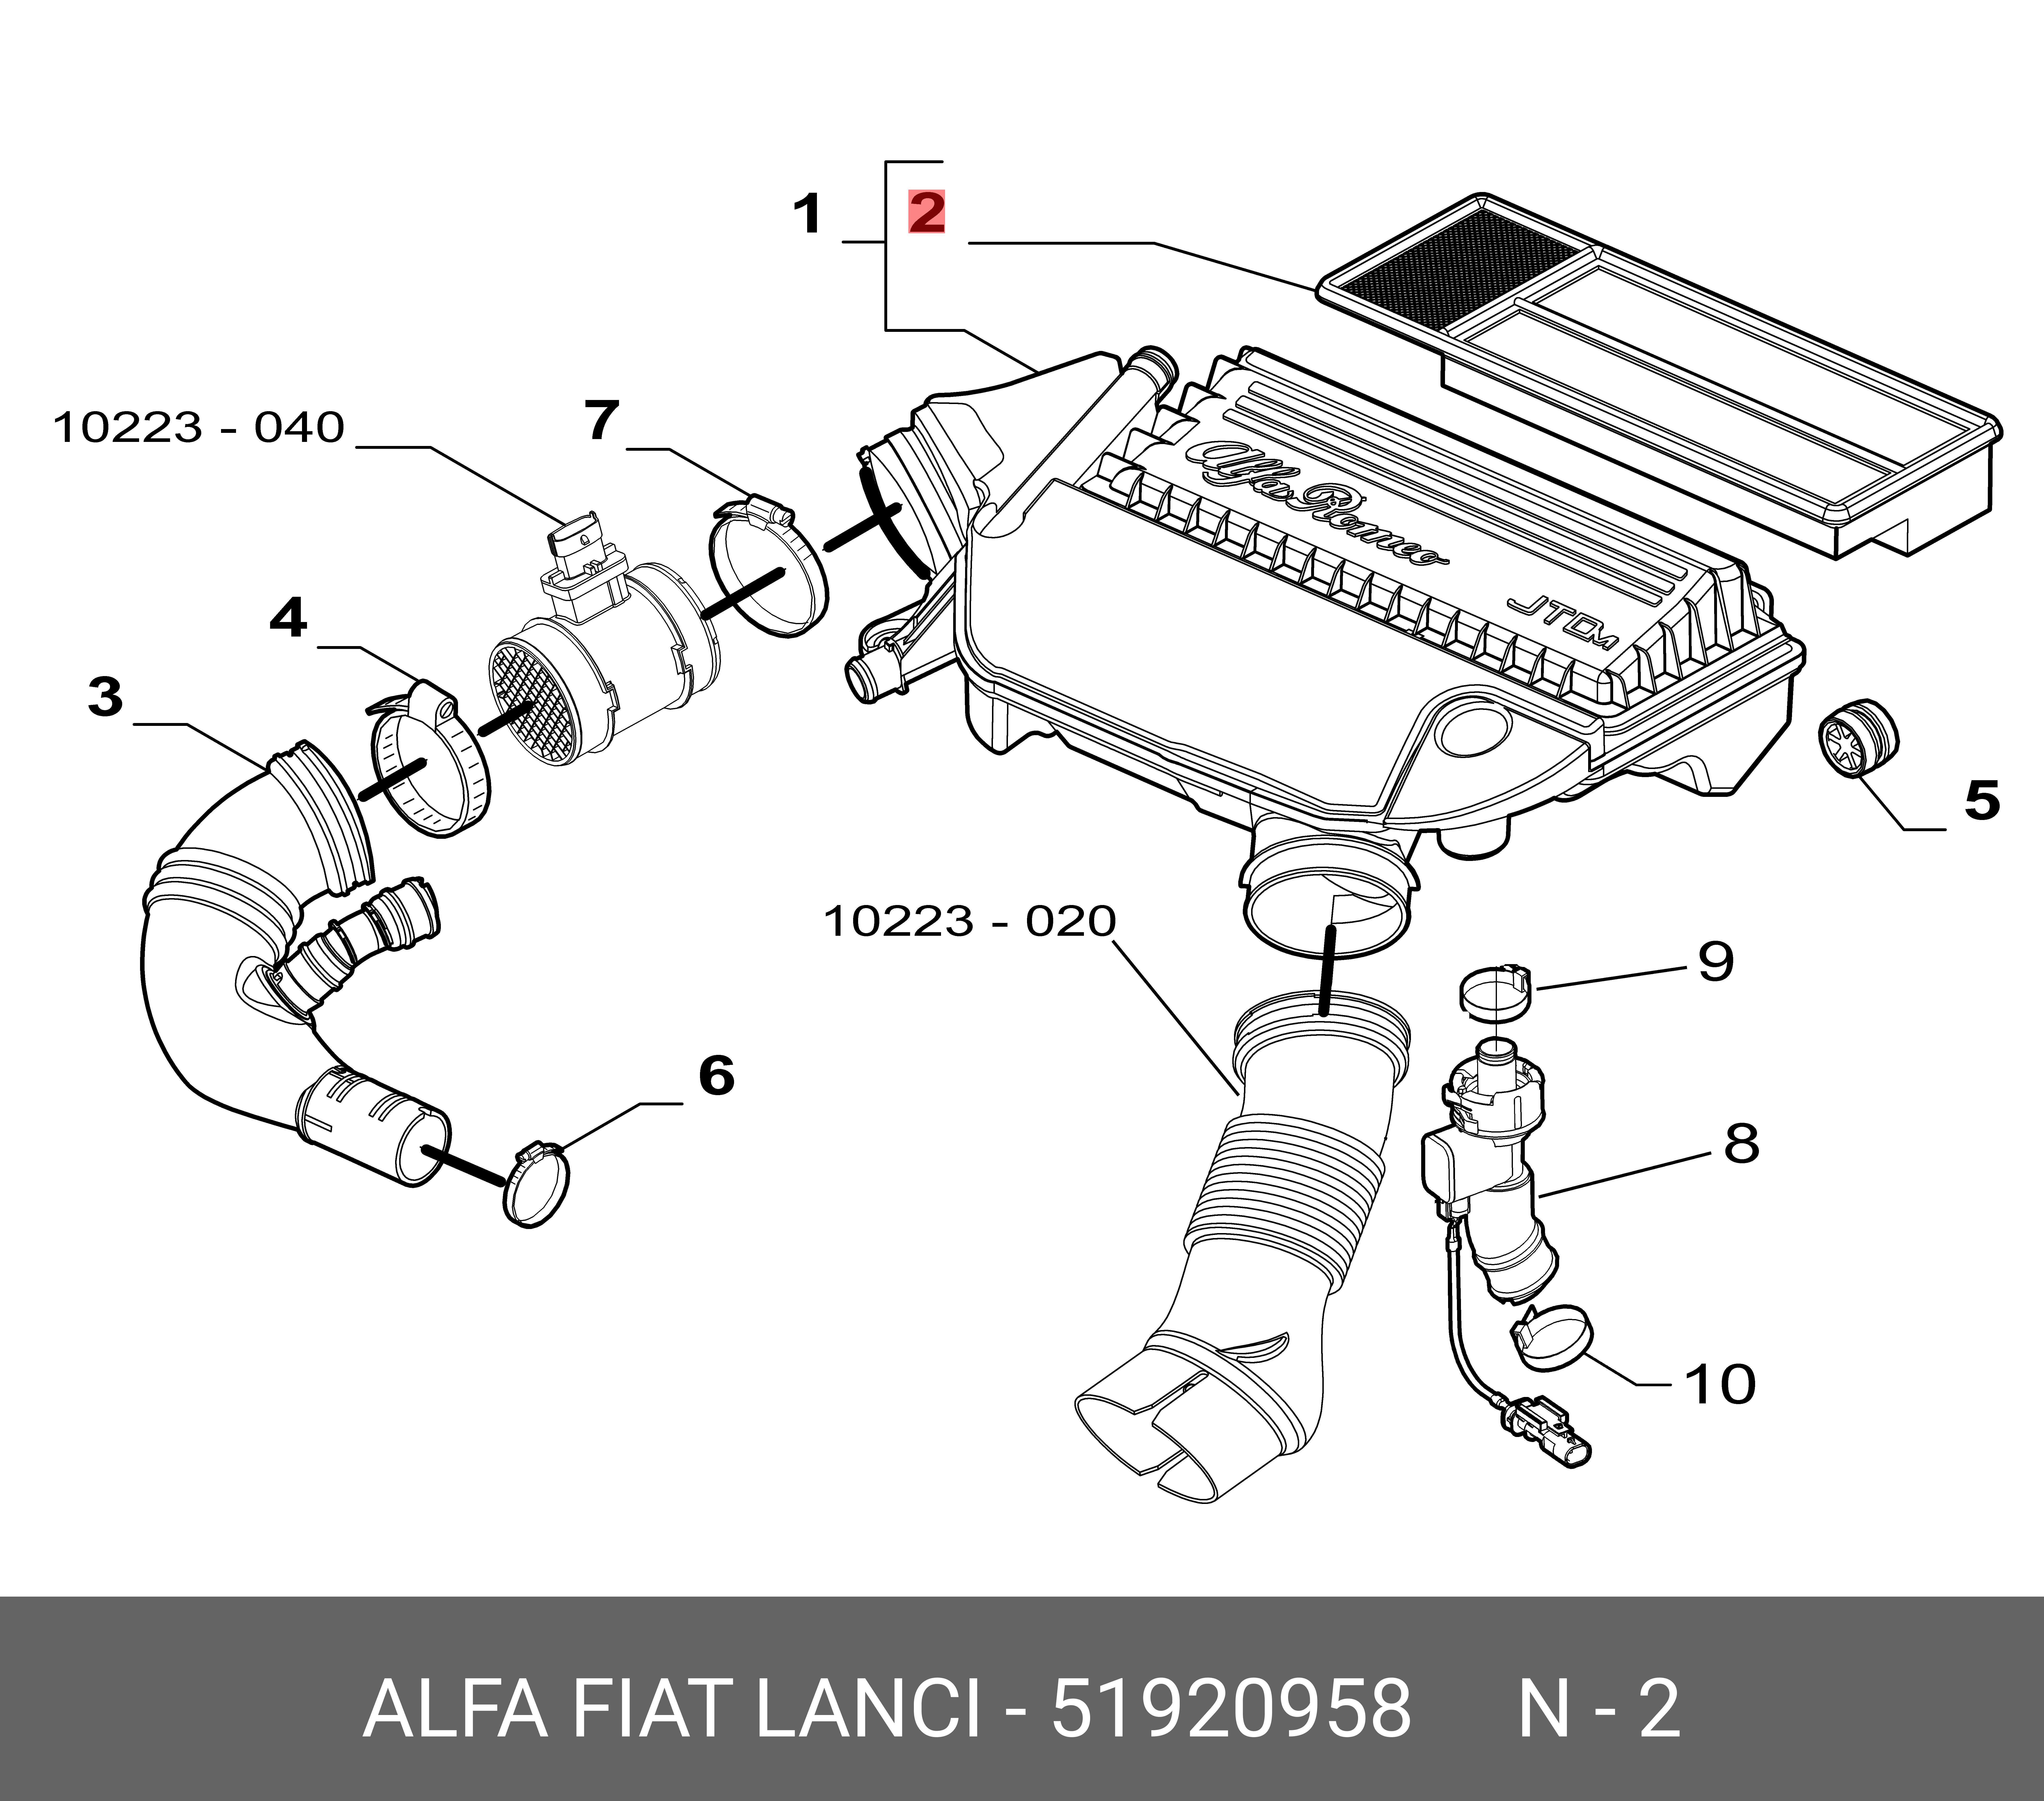 Фильтр воздушный  - Fiat/Alfa/Lancia 5 192 0958